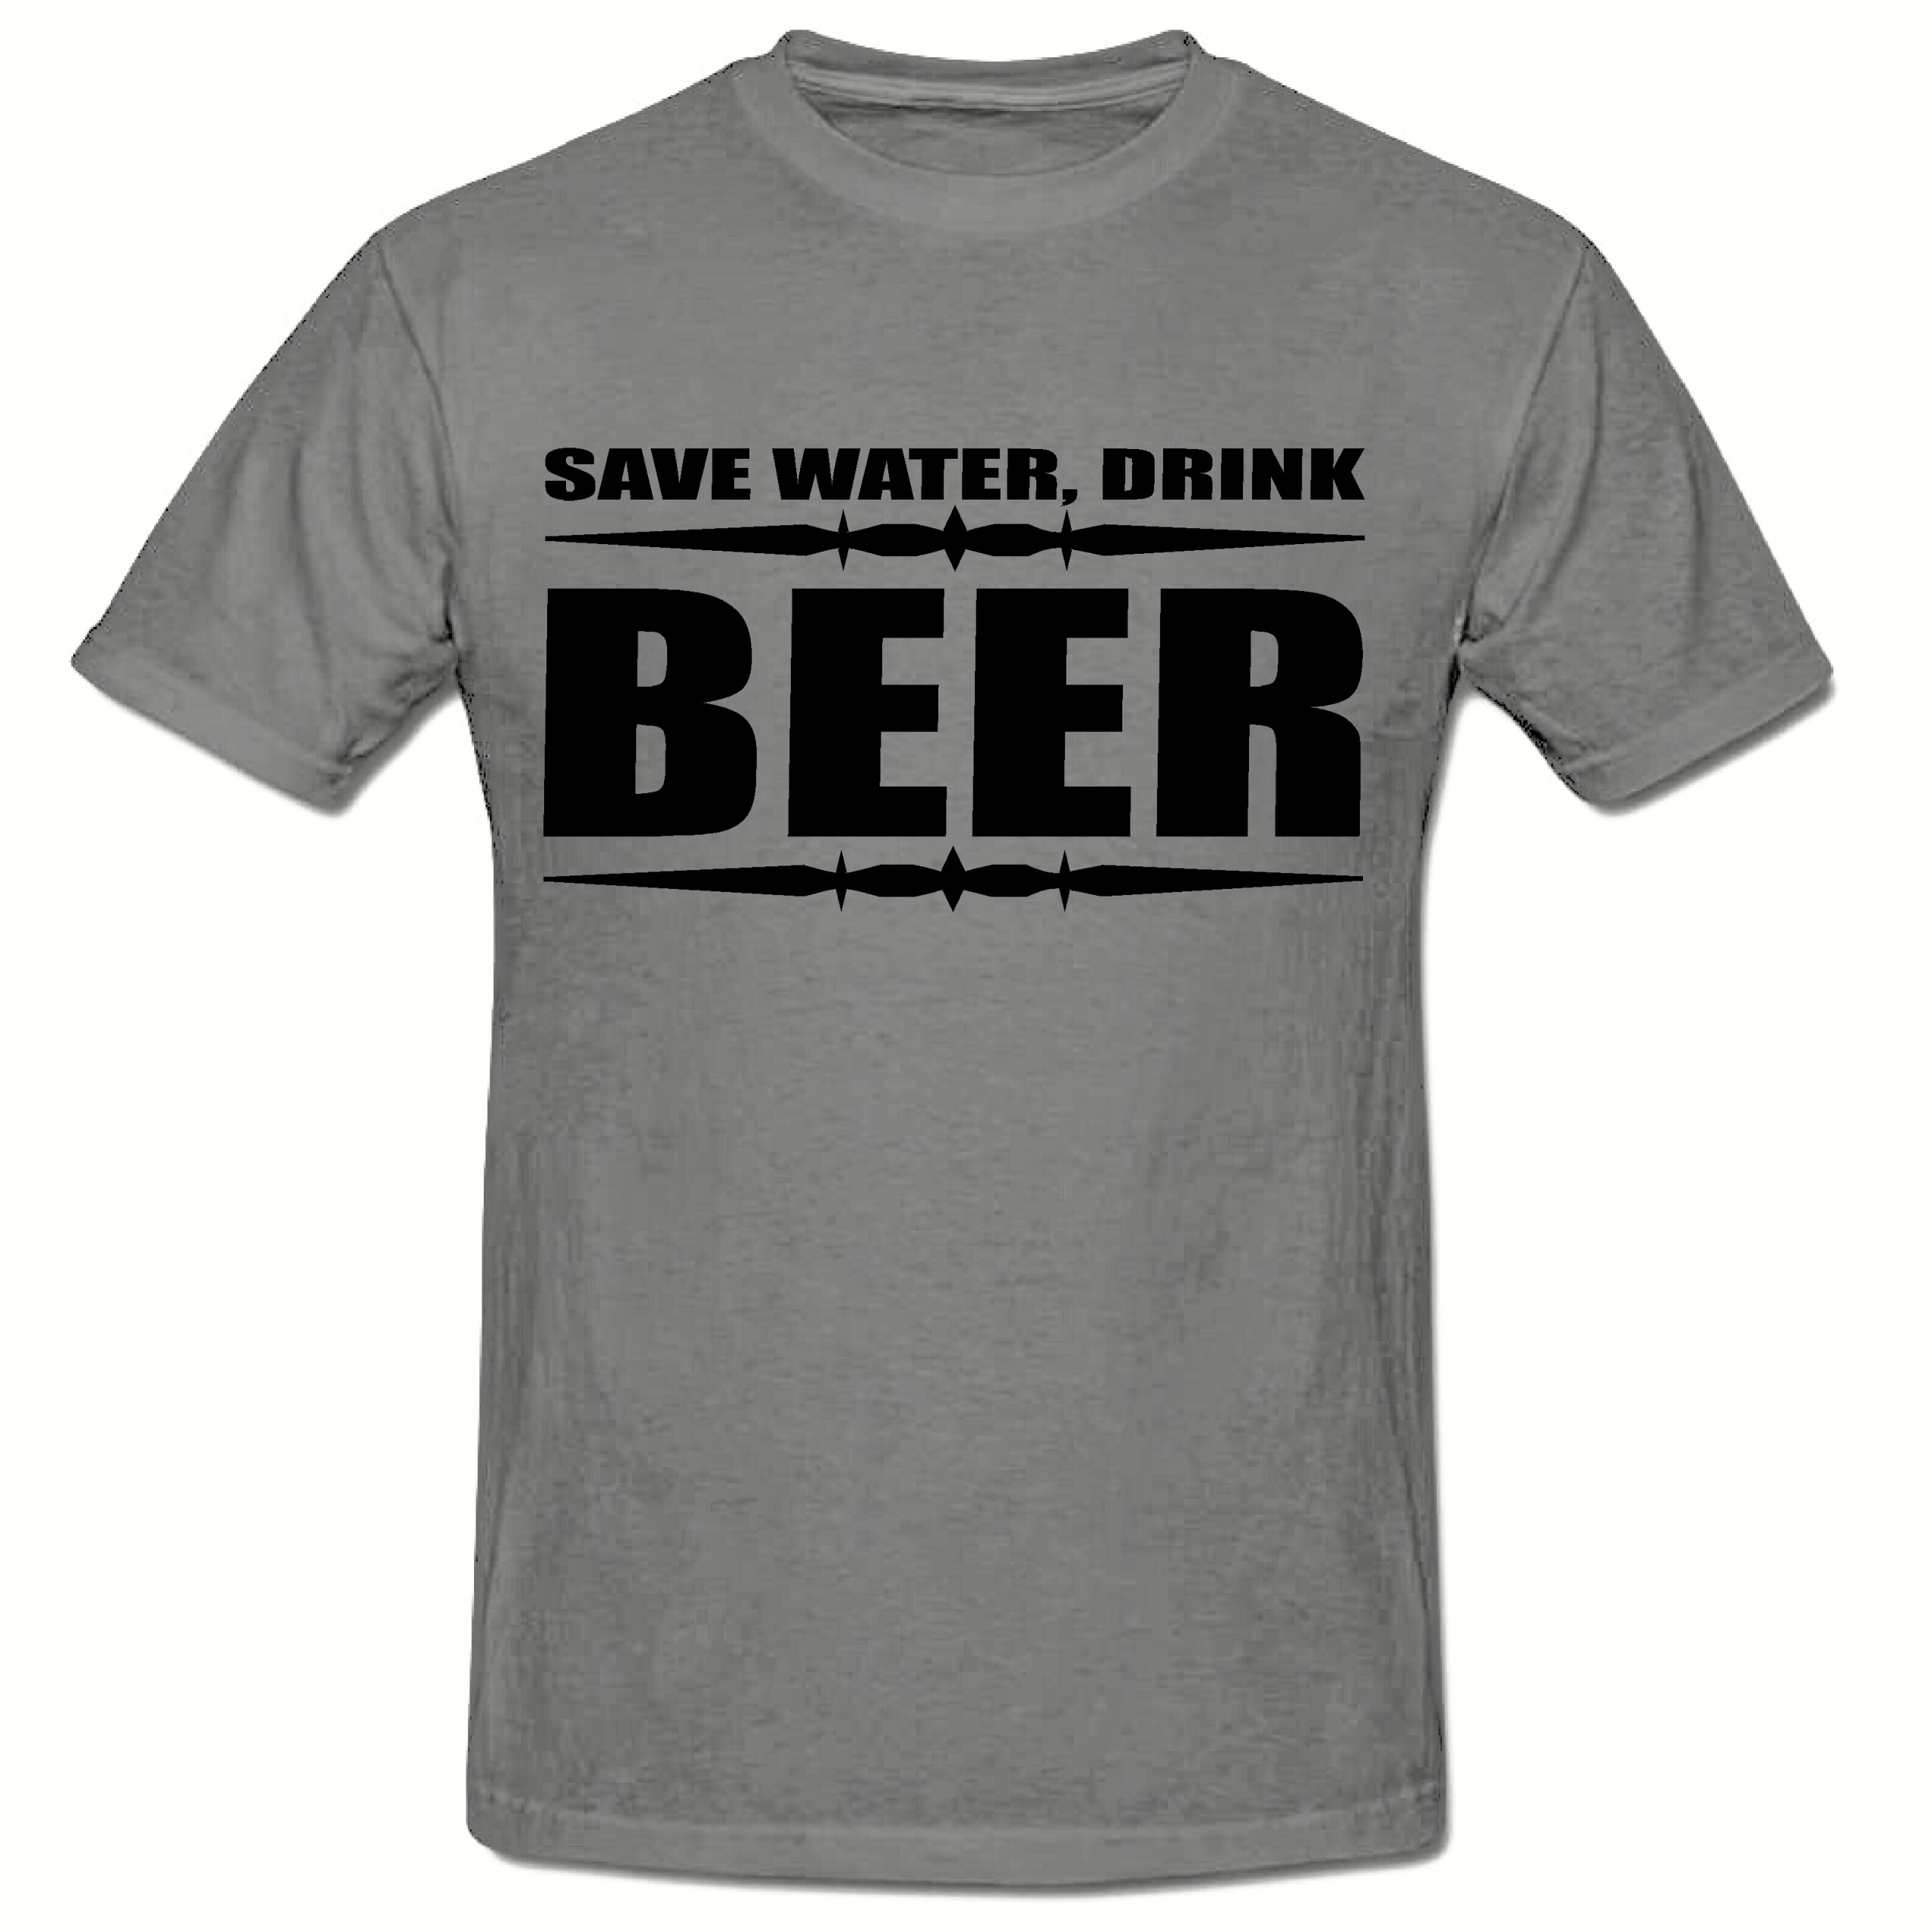 Save water drink beer men's t shirt